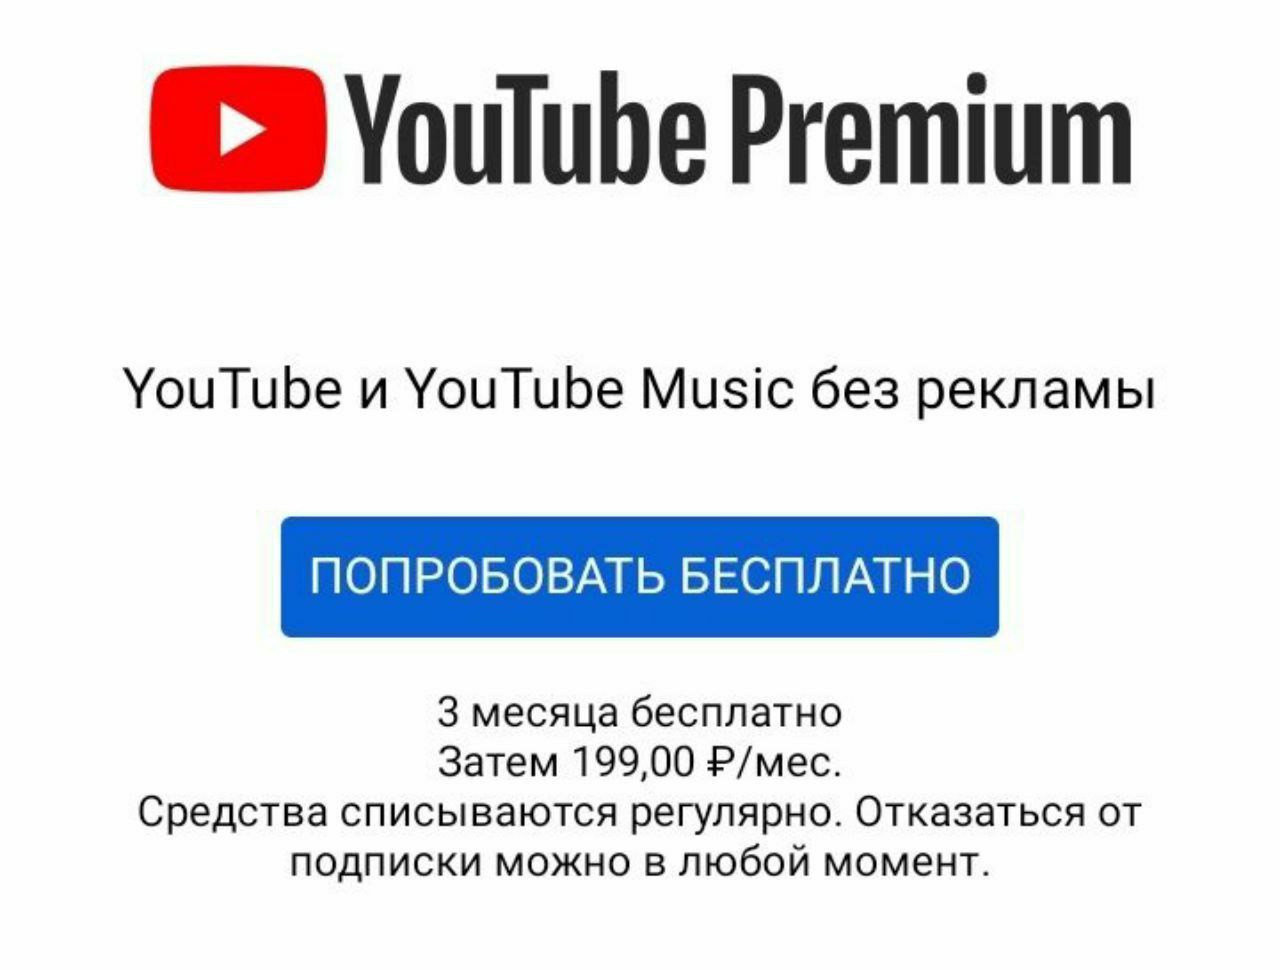 Подписка ютуб музыка. Youtube премиум. Подписка youtube Premium. Подписка youtube Music. Реклама youtube Premium.